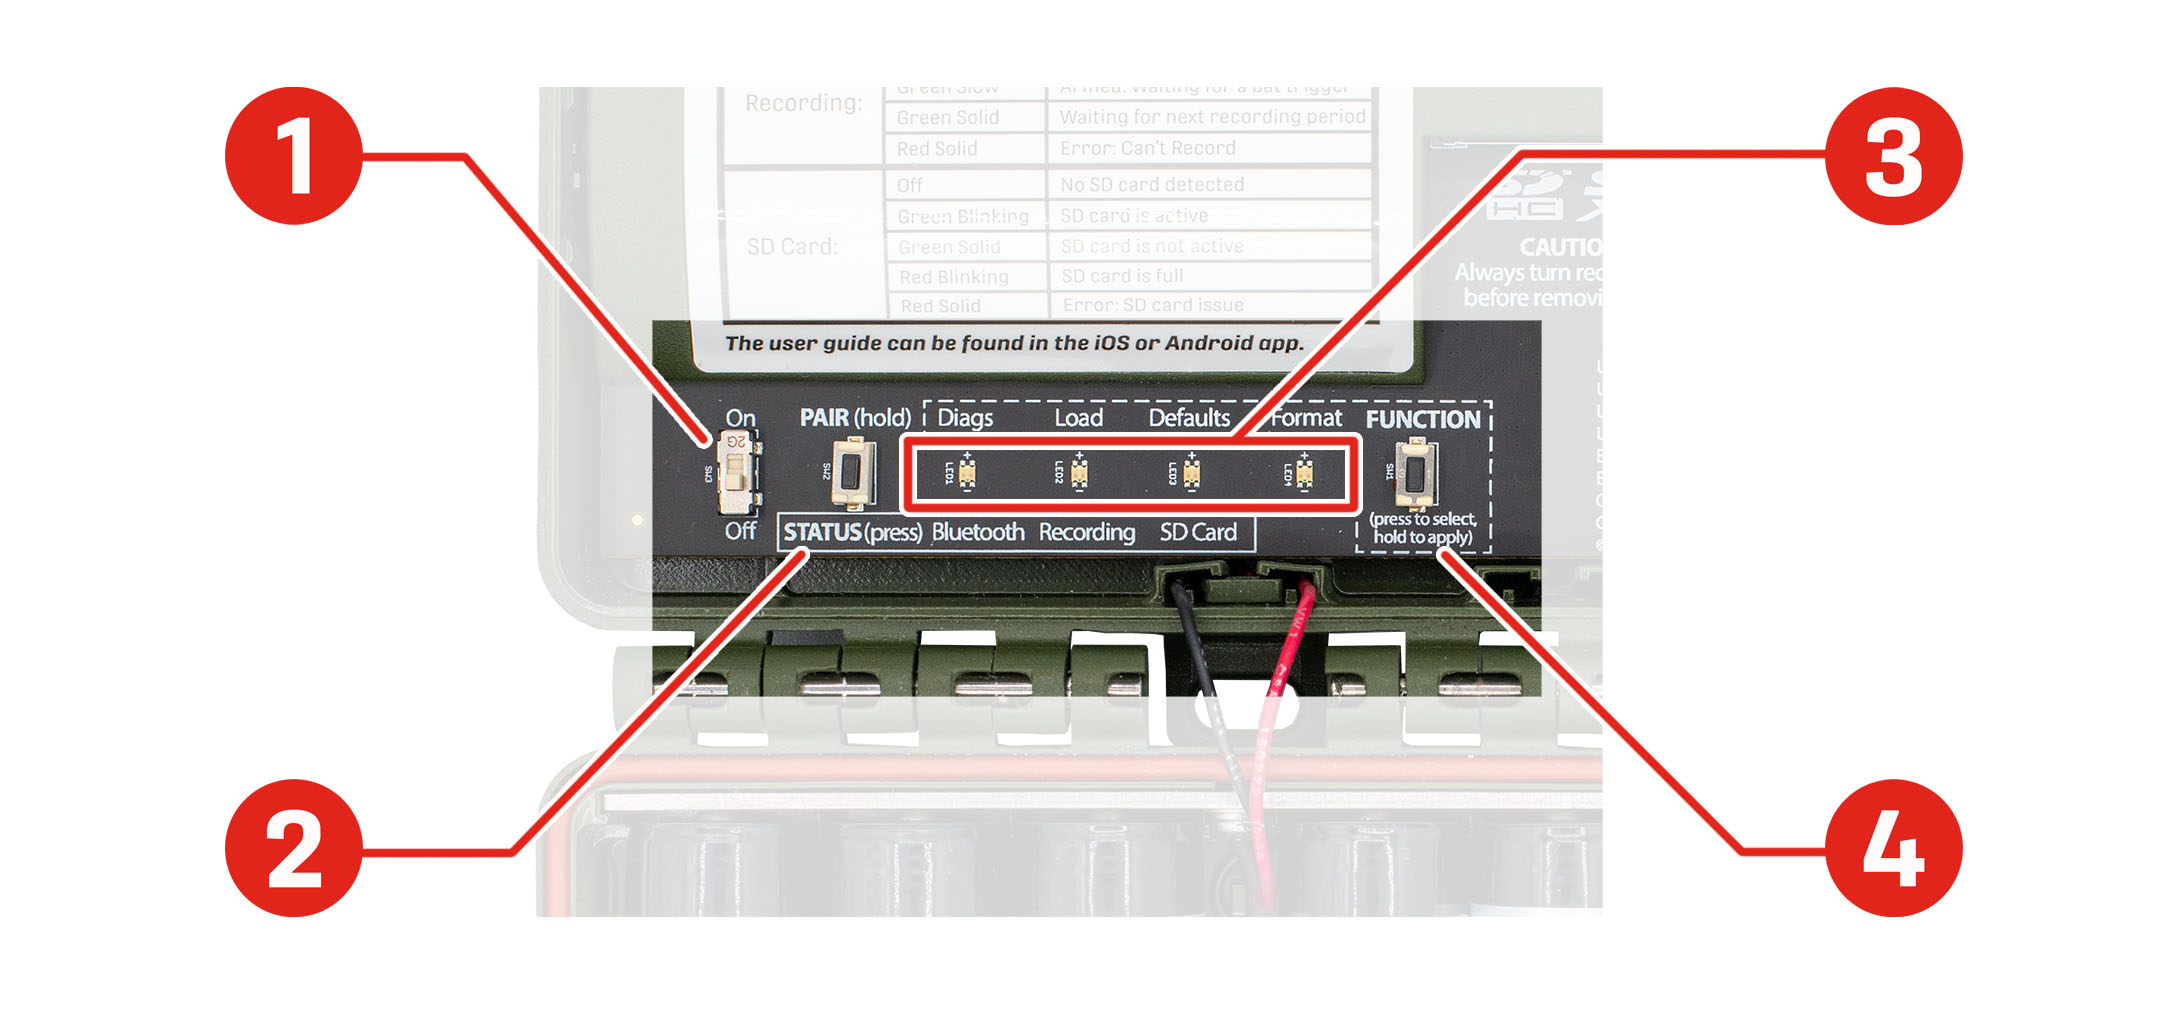 El panel de control está ubicado en el borde inferior del compartimento superior del grabador. Empezando por la esquina inferior izquierda, puede encontrar los siguientes elementos dispuestos horizontalmente de izquierda a derecha: interruptor ON/OFF (Encendido/Apagado), botón PAIR/STATUS (Emparejar/Estado), LED de diagnóstico/Bluetooth, LED de carga/grabación, LED de valores predeterminados/tarjeta SD, LED de formato y botón FUNCTION (Función). El interruptor ON/OFF (Encendido/Apagado) está en ON (encendido) en la posición superior y en OFF (apagado) en la posición inferior.